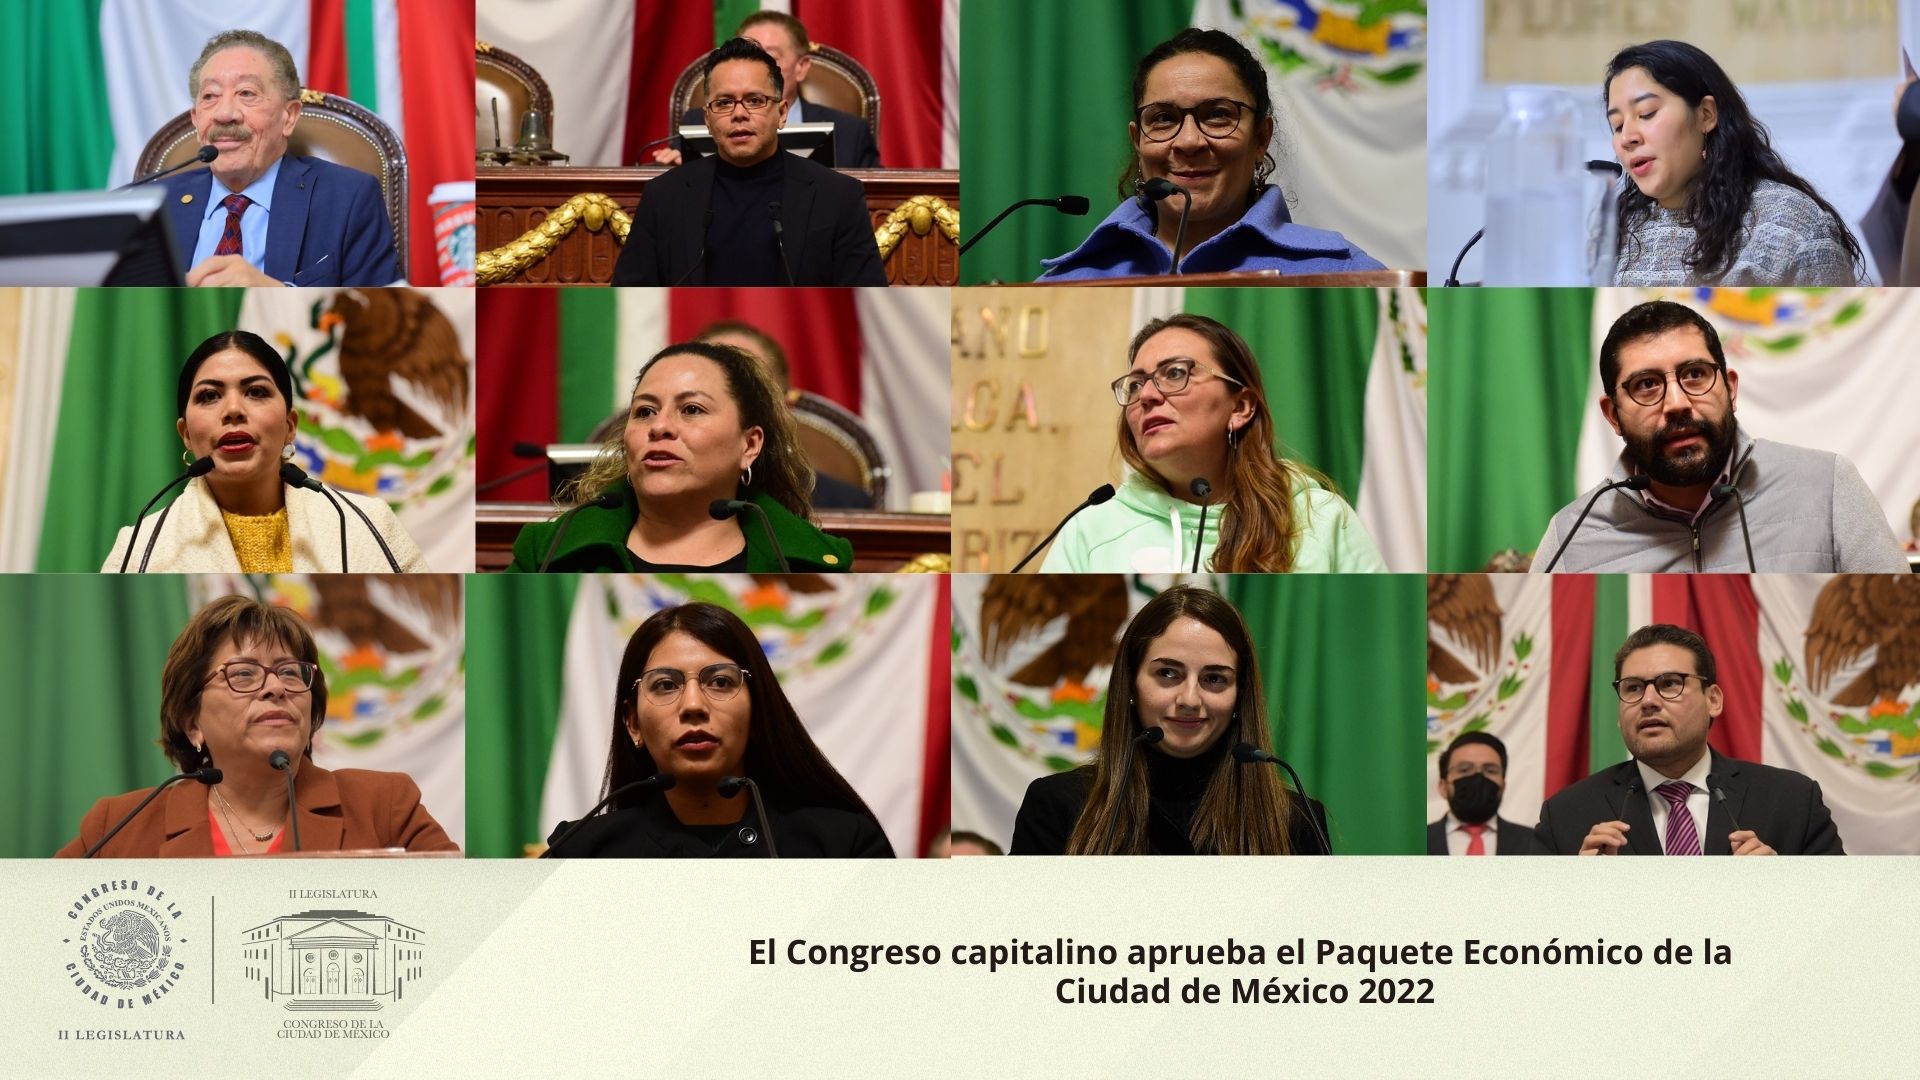 El Congreso capitalino aprueba el Paquete Económico de la Ciudad de México 2022